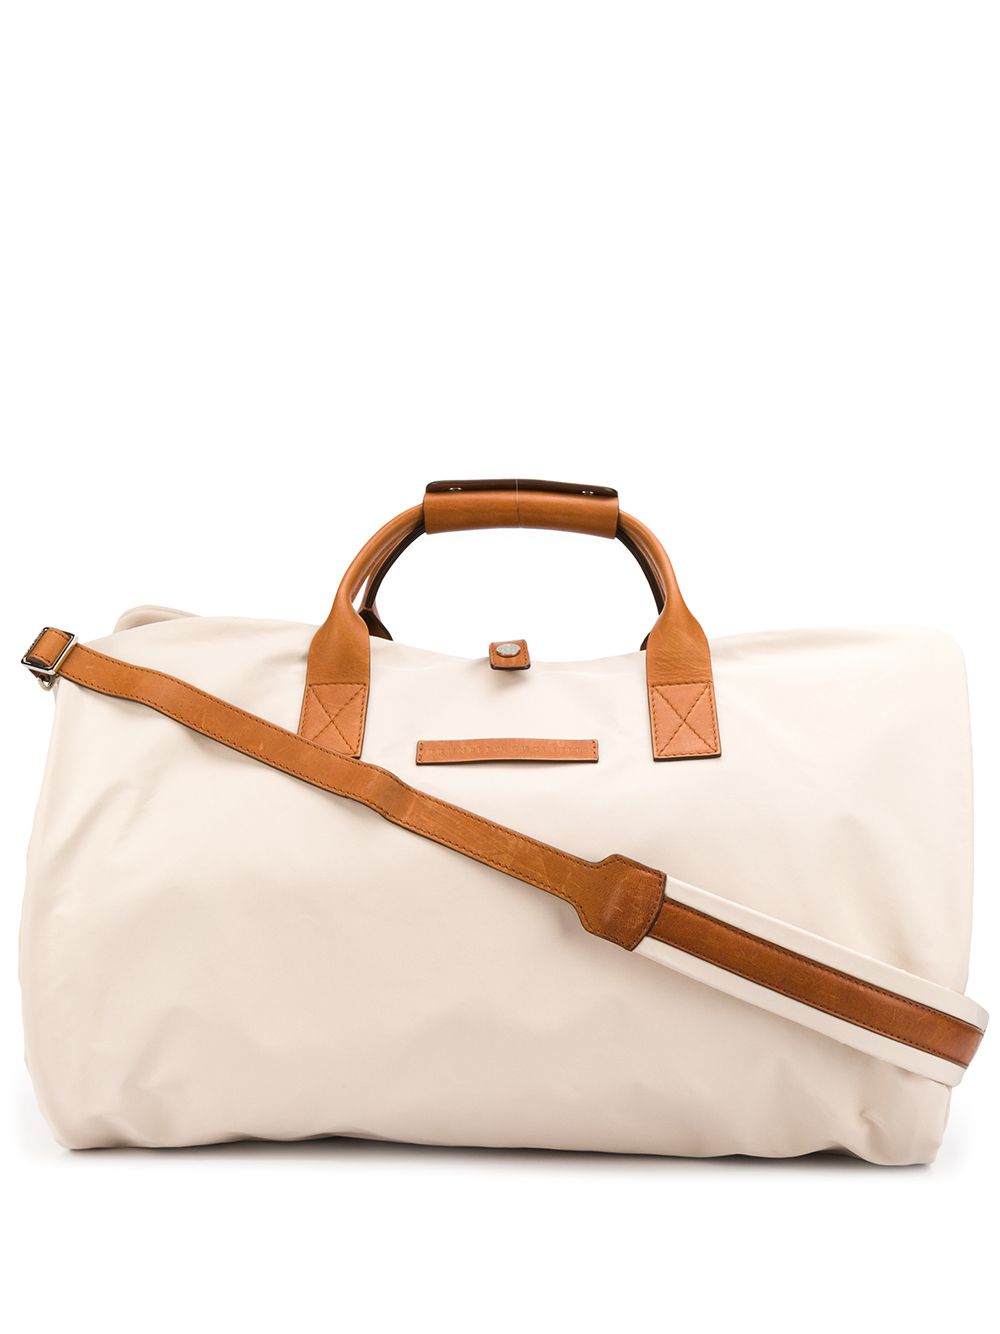 фото Brunello cucinelli фактурная дорожная сумка с тисненым логотипом